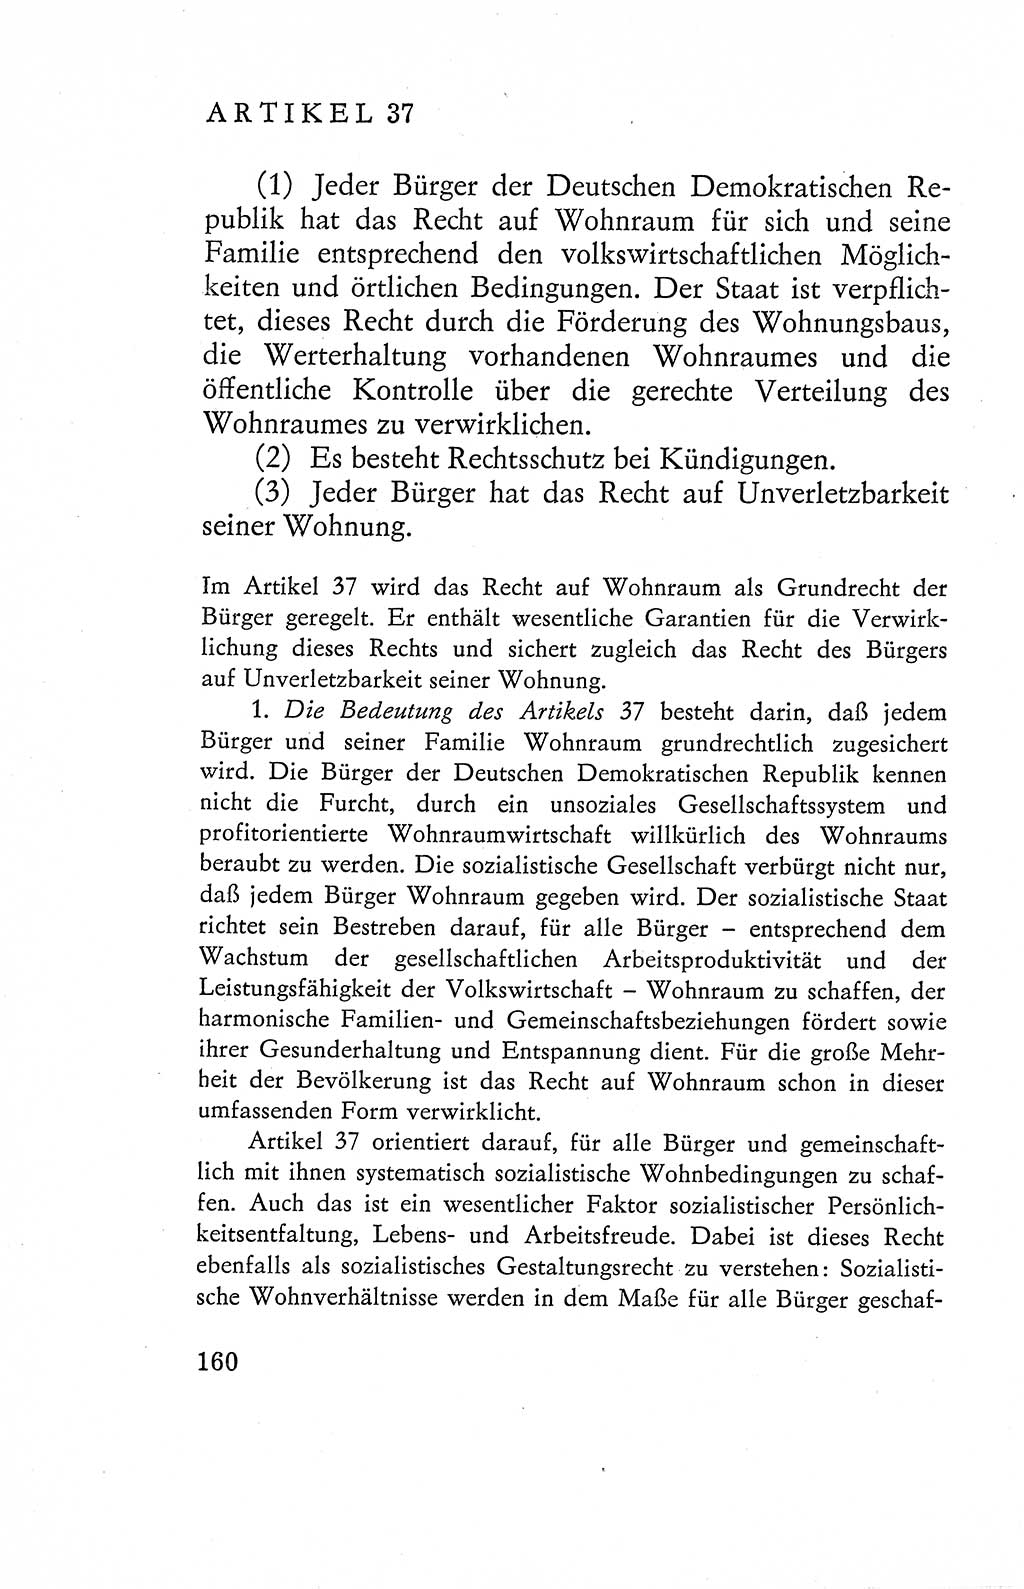 Verfassung der Deutschen Demokratischen Republik (DDR), Dokumente, Kommentar 1969, Band 2, Seite 160 (Verf. DDR Dok. Komm. 1969, Bd. 2, S. 160)